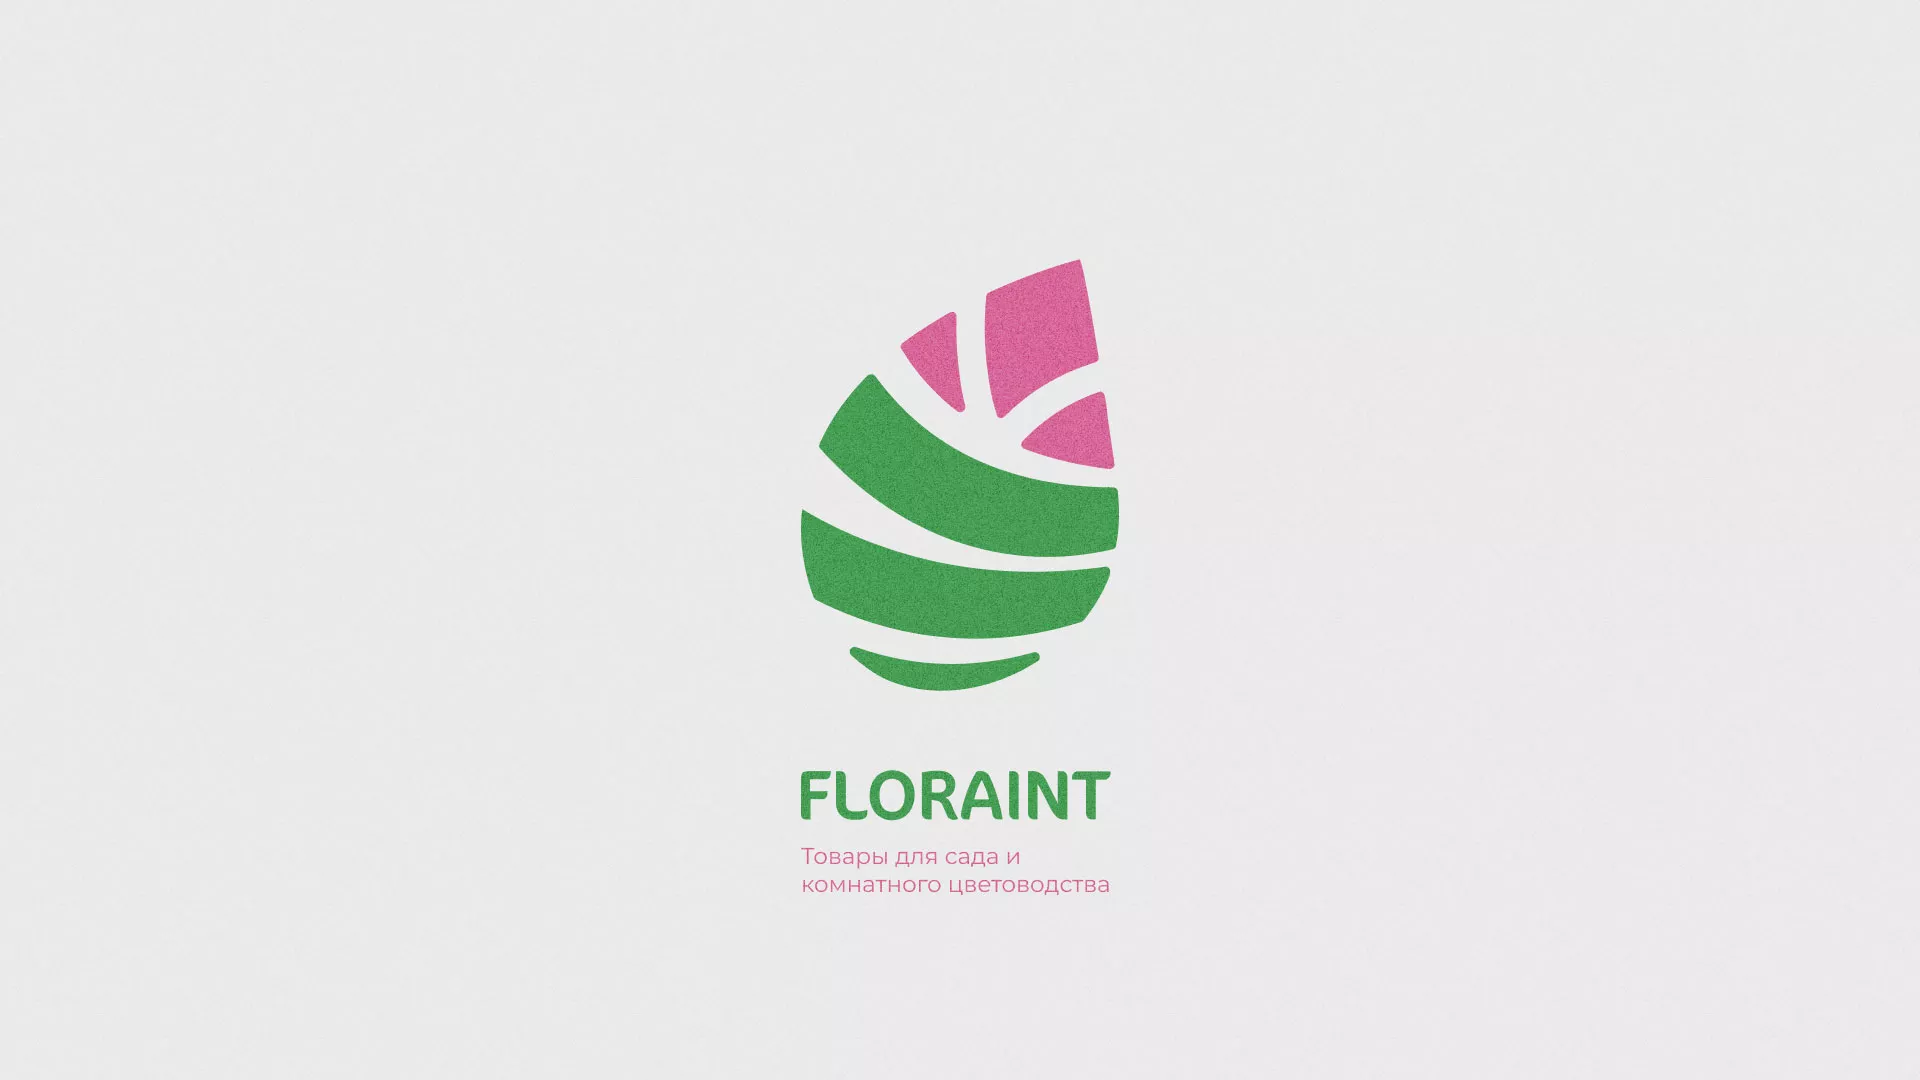 Разработка оформления профиля Instagram для магазина «Floraint» в Кирове